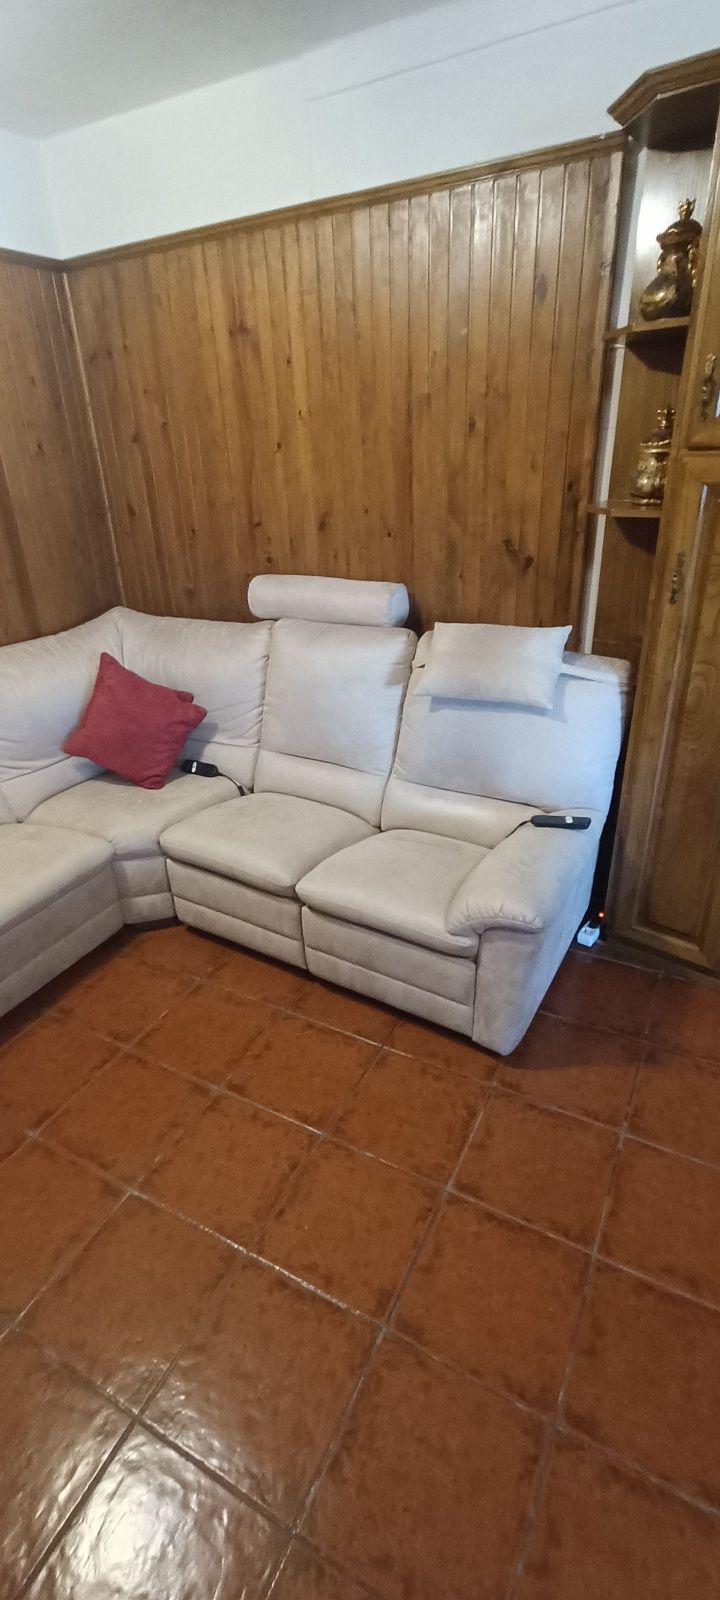 Vendo sofá com 2 lugares relax com comando